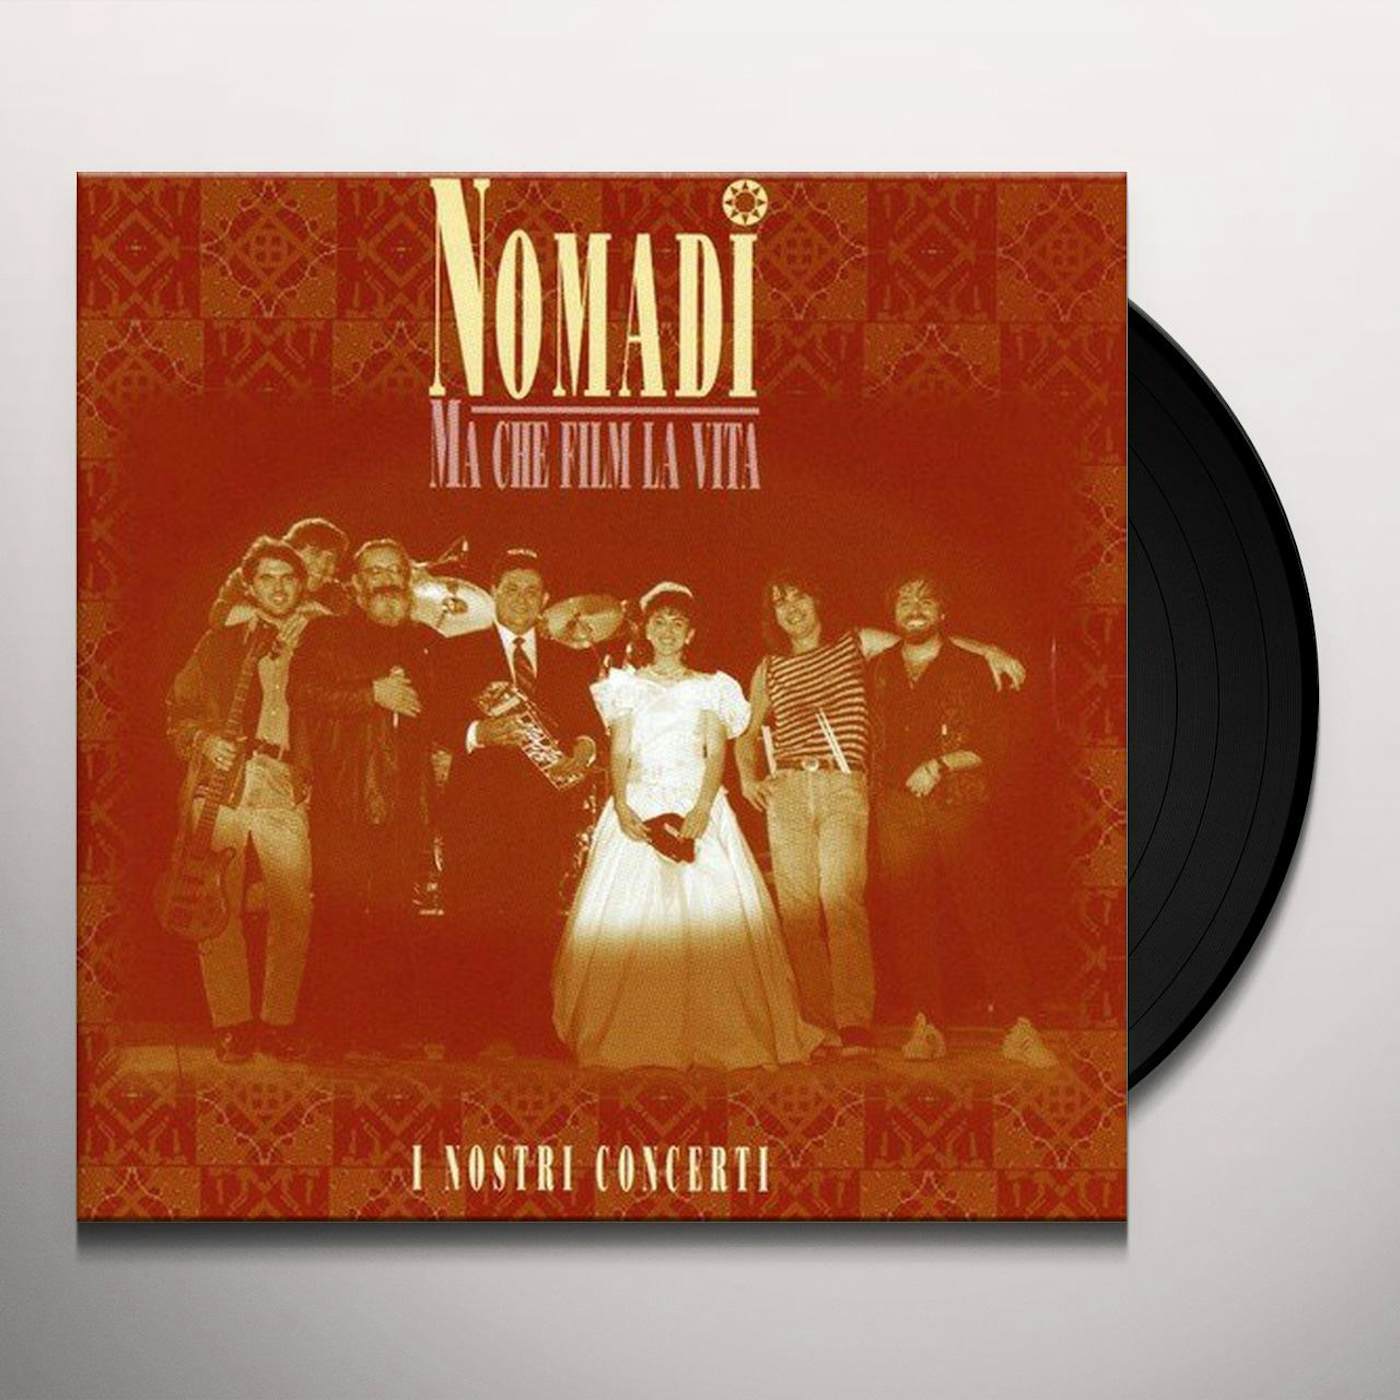 Nomadi MA CHE FILM LA VITA LIVE: I NOSTRI CONCERTI Vinyl Record